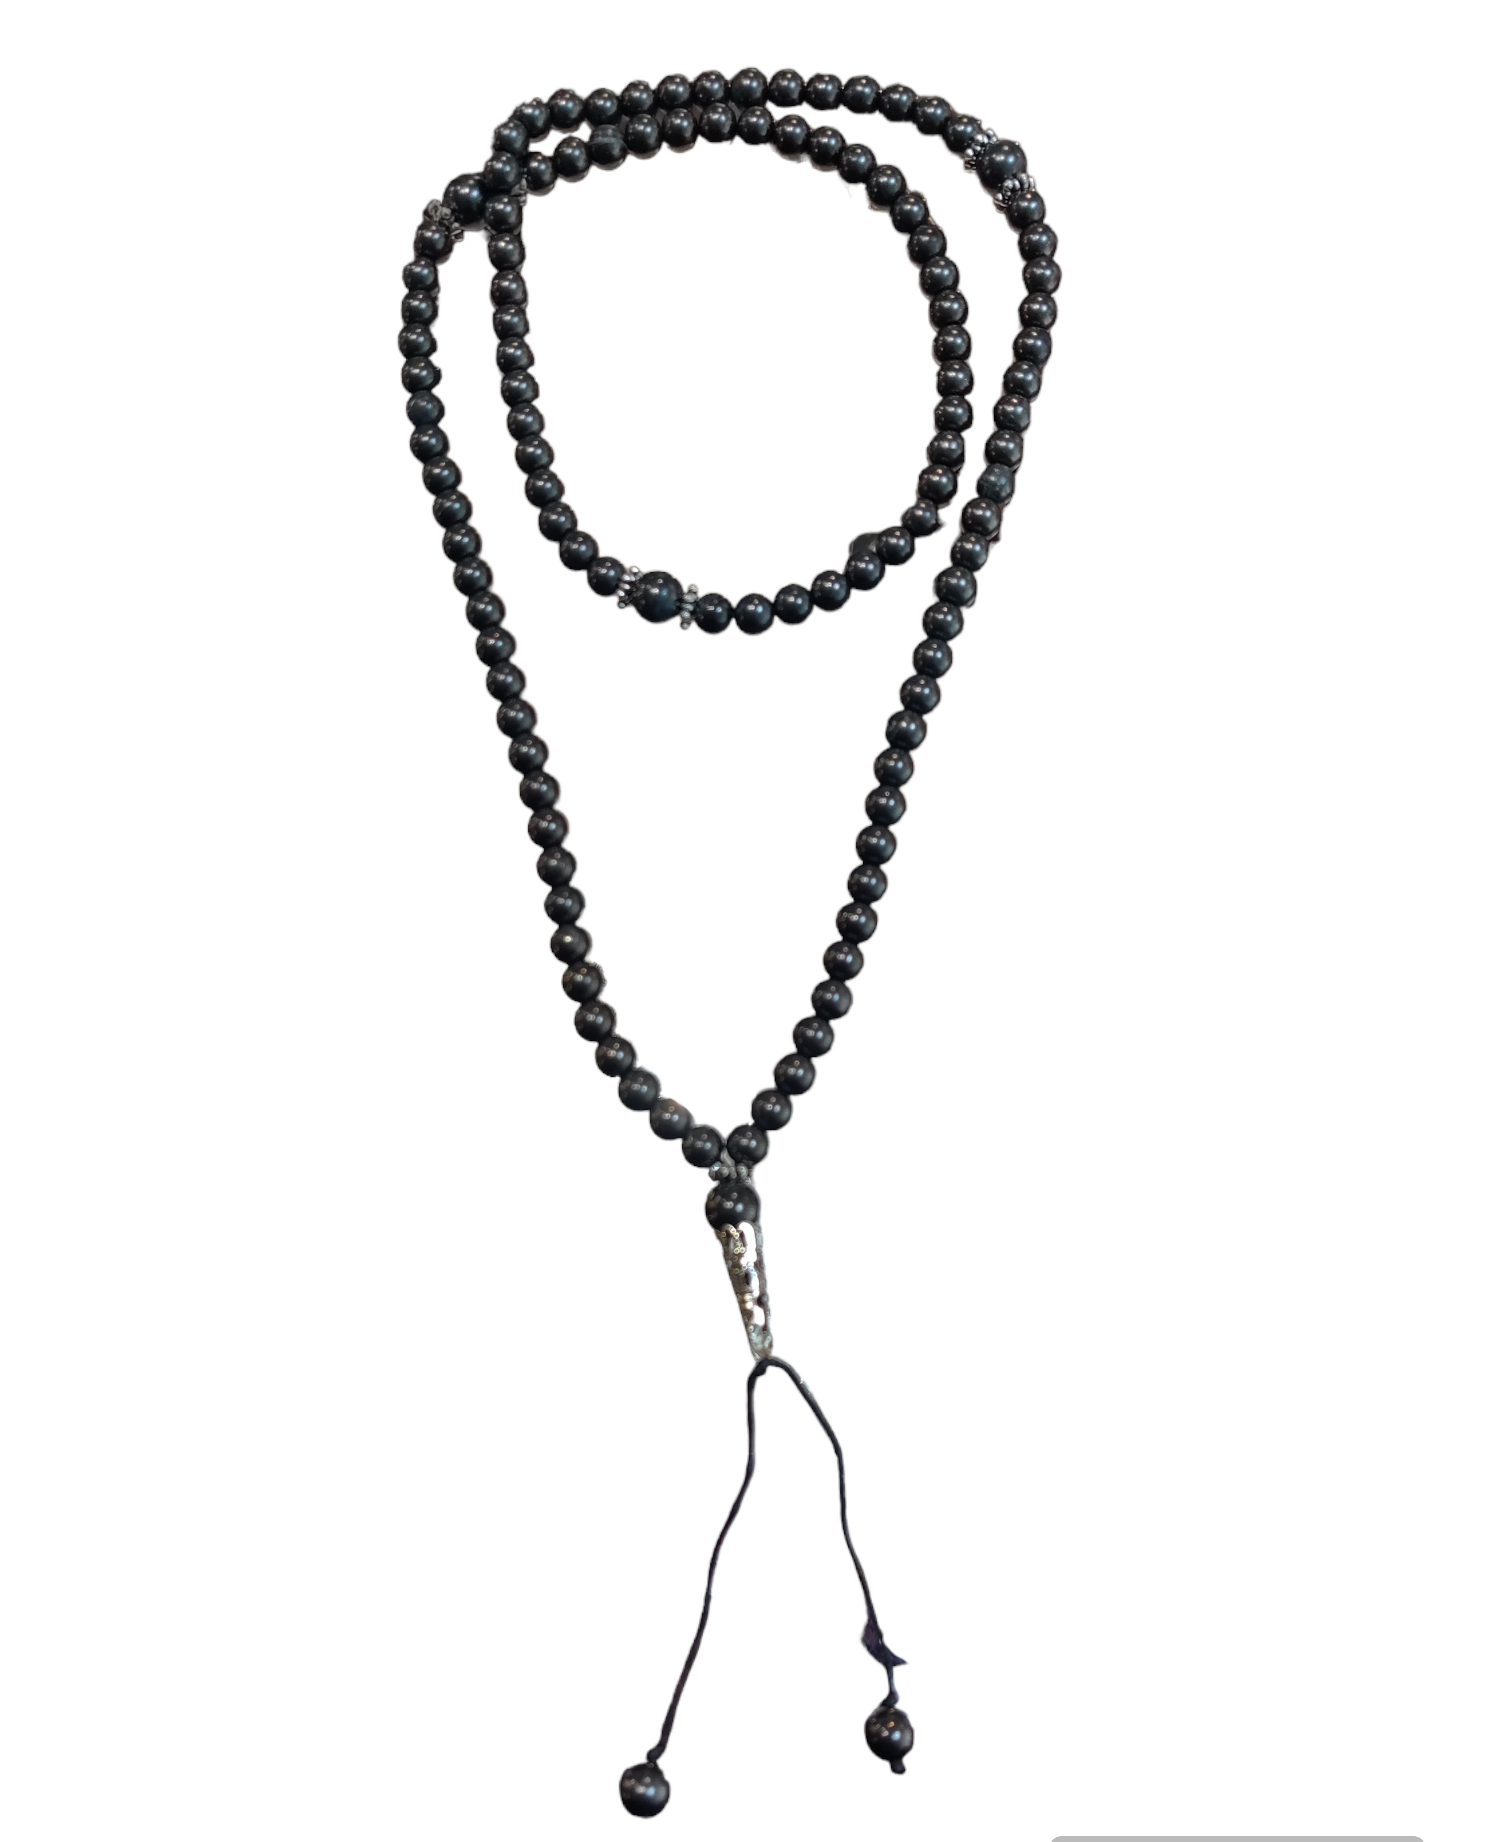 Shungite - Buddhist Mala (Necklace) of 108 Beads